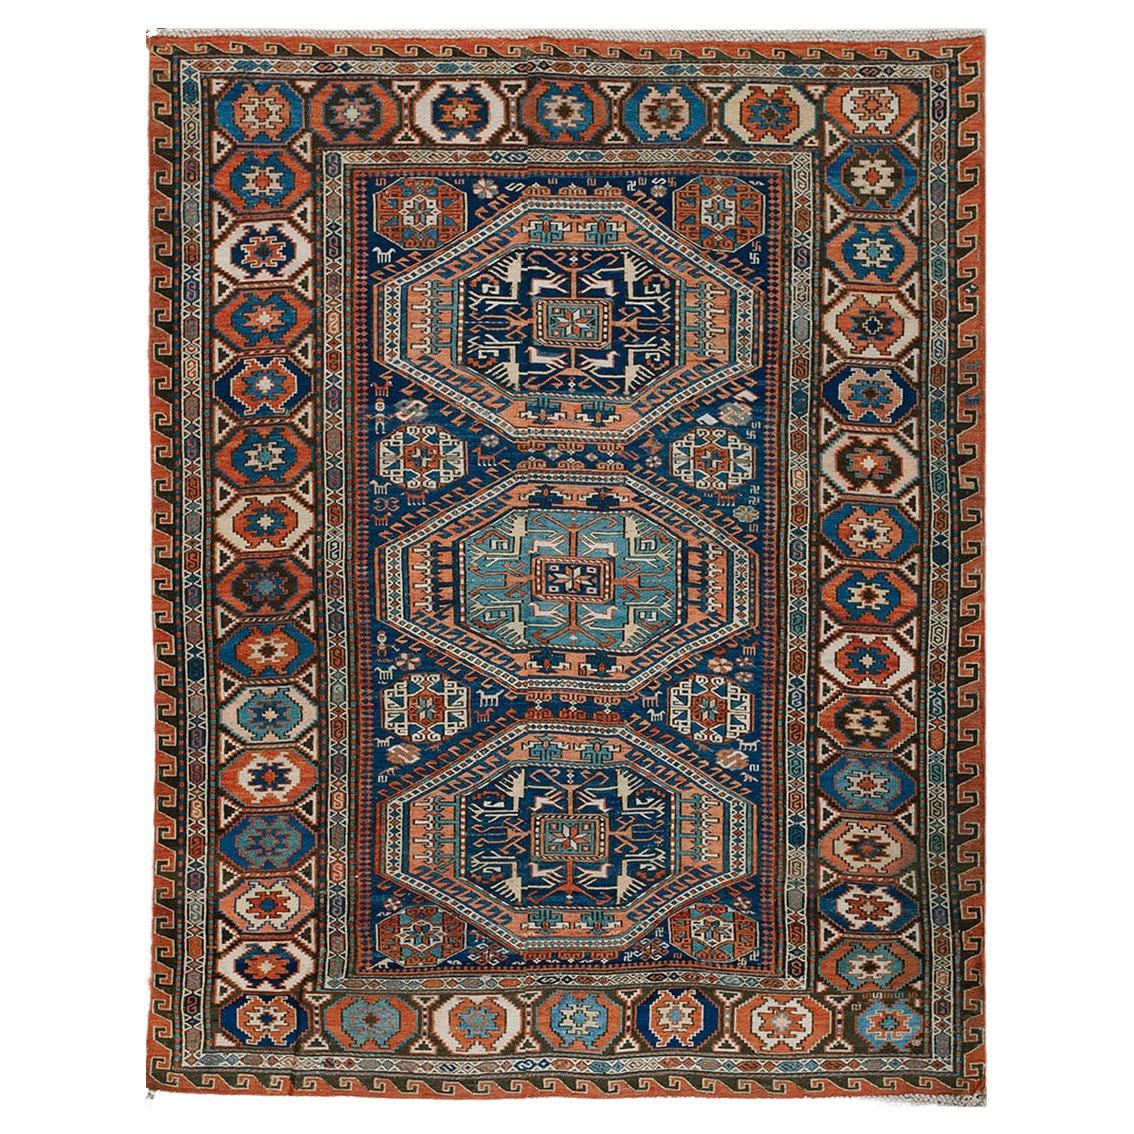 19th Century Caucasian Sumak Carpet ( 4'6" x 5'8" - 138 x 173 ) For Sale